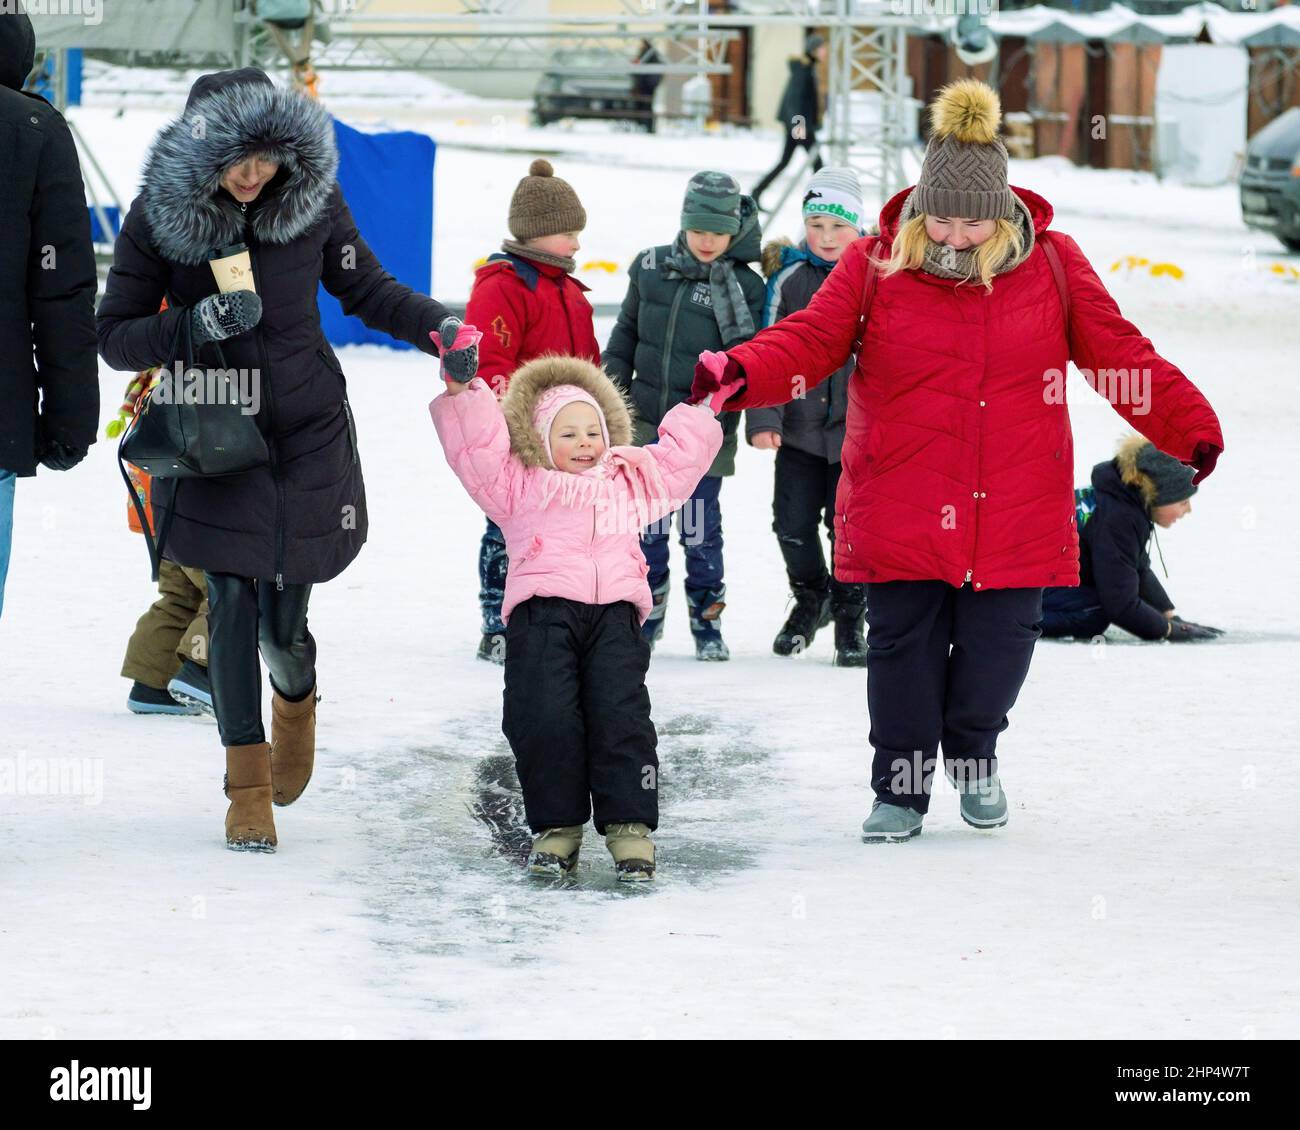 Diversión invernal. Los niños viajan en hielo en invierno. Los padres están con ellos. Foto de stock